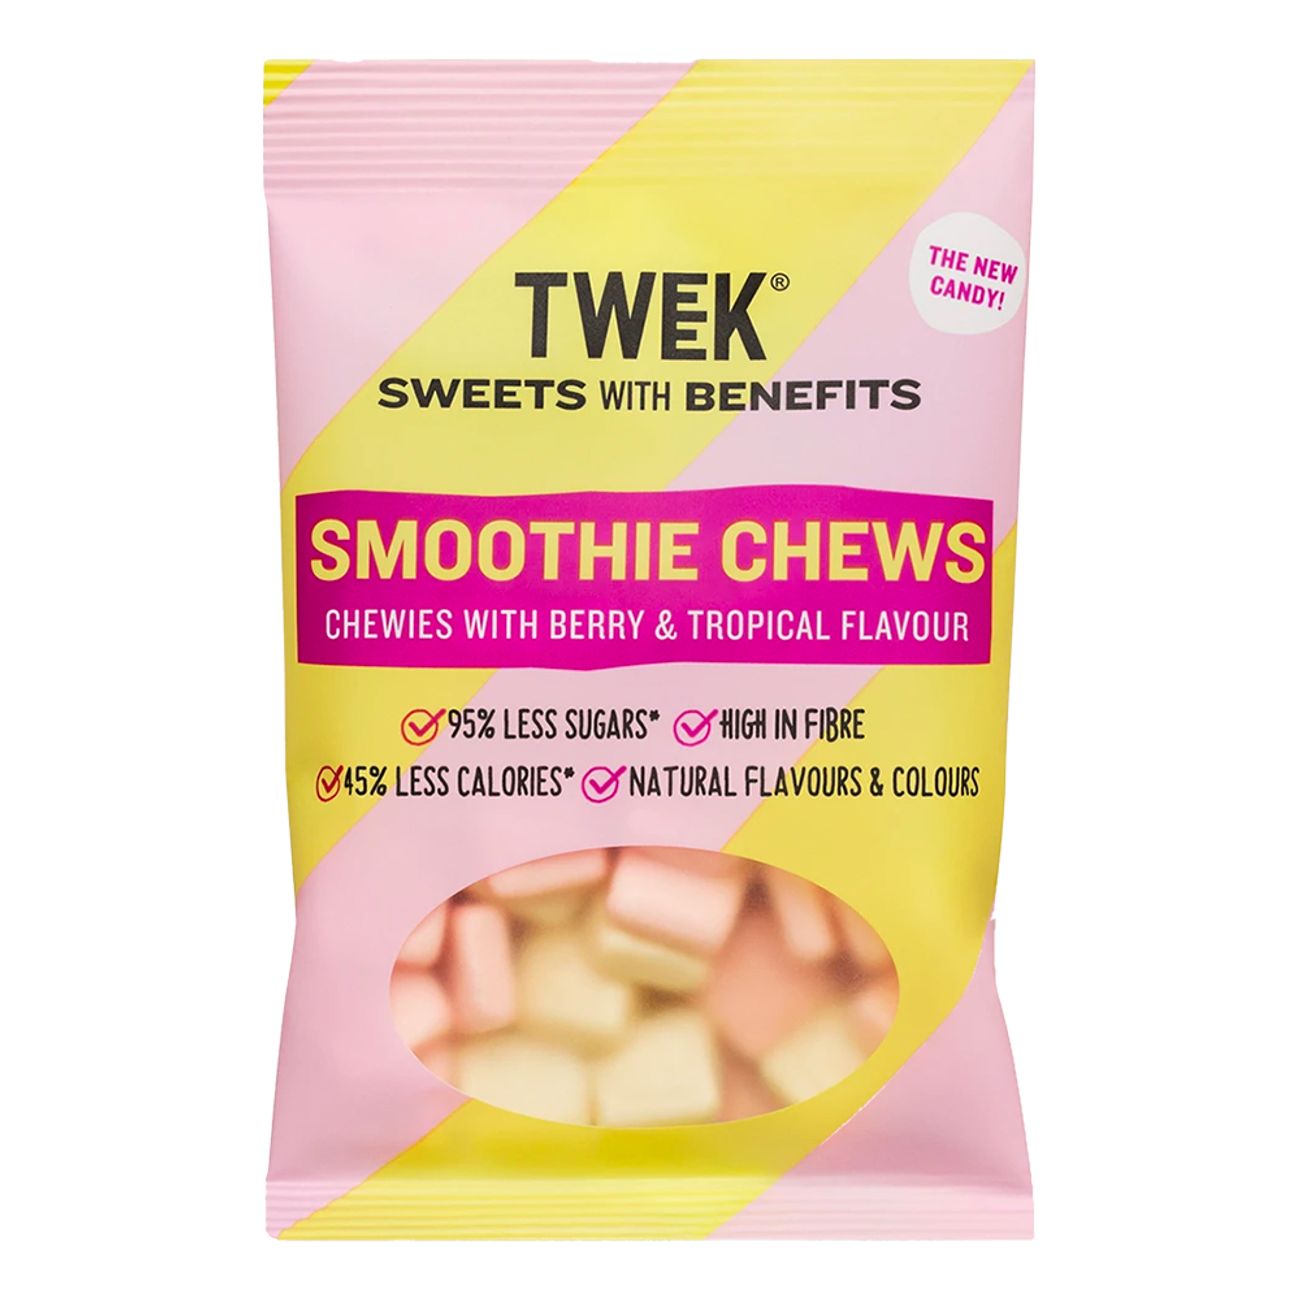 tweek-smoothie-chews-73243-1